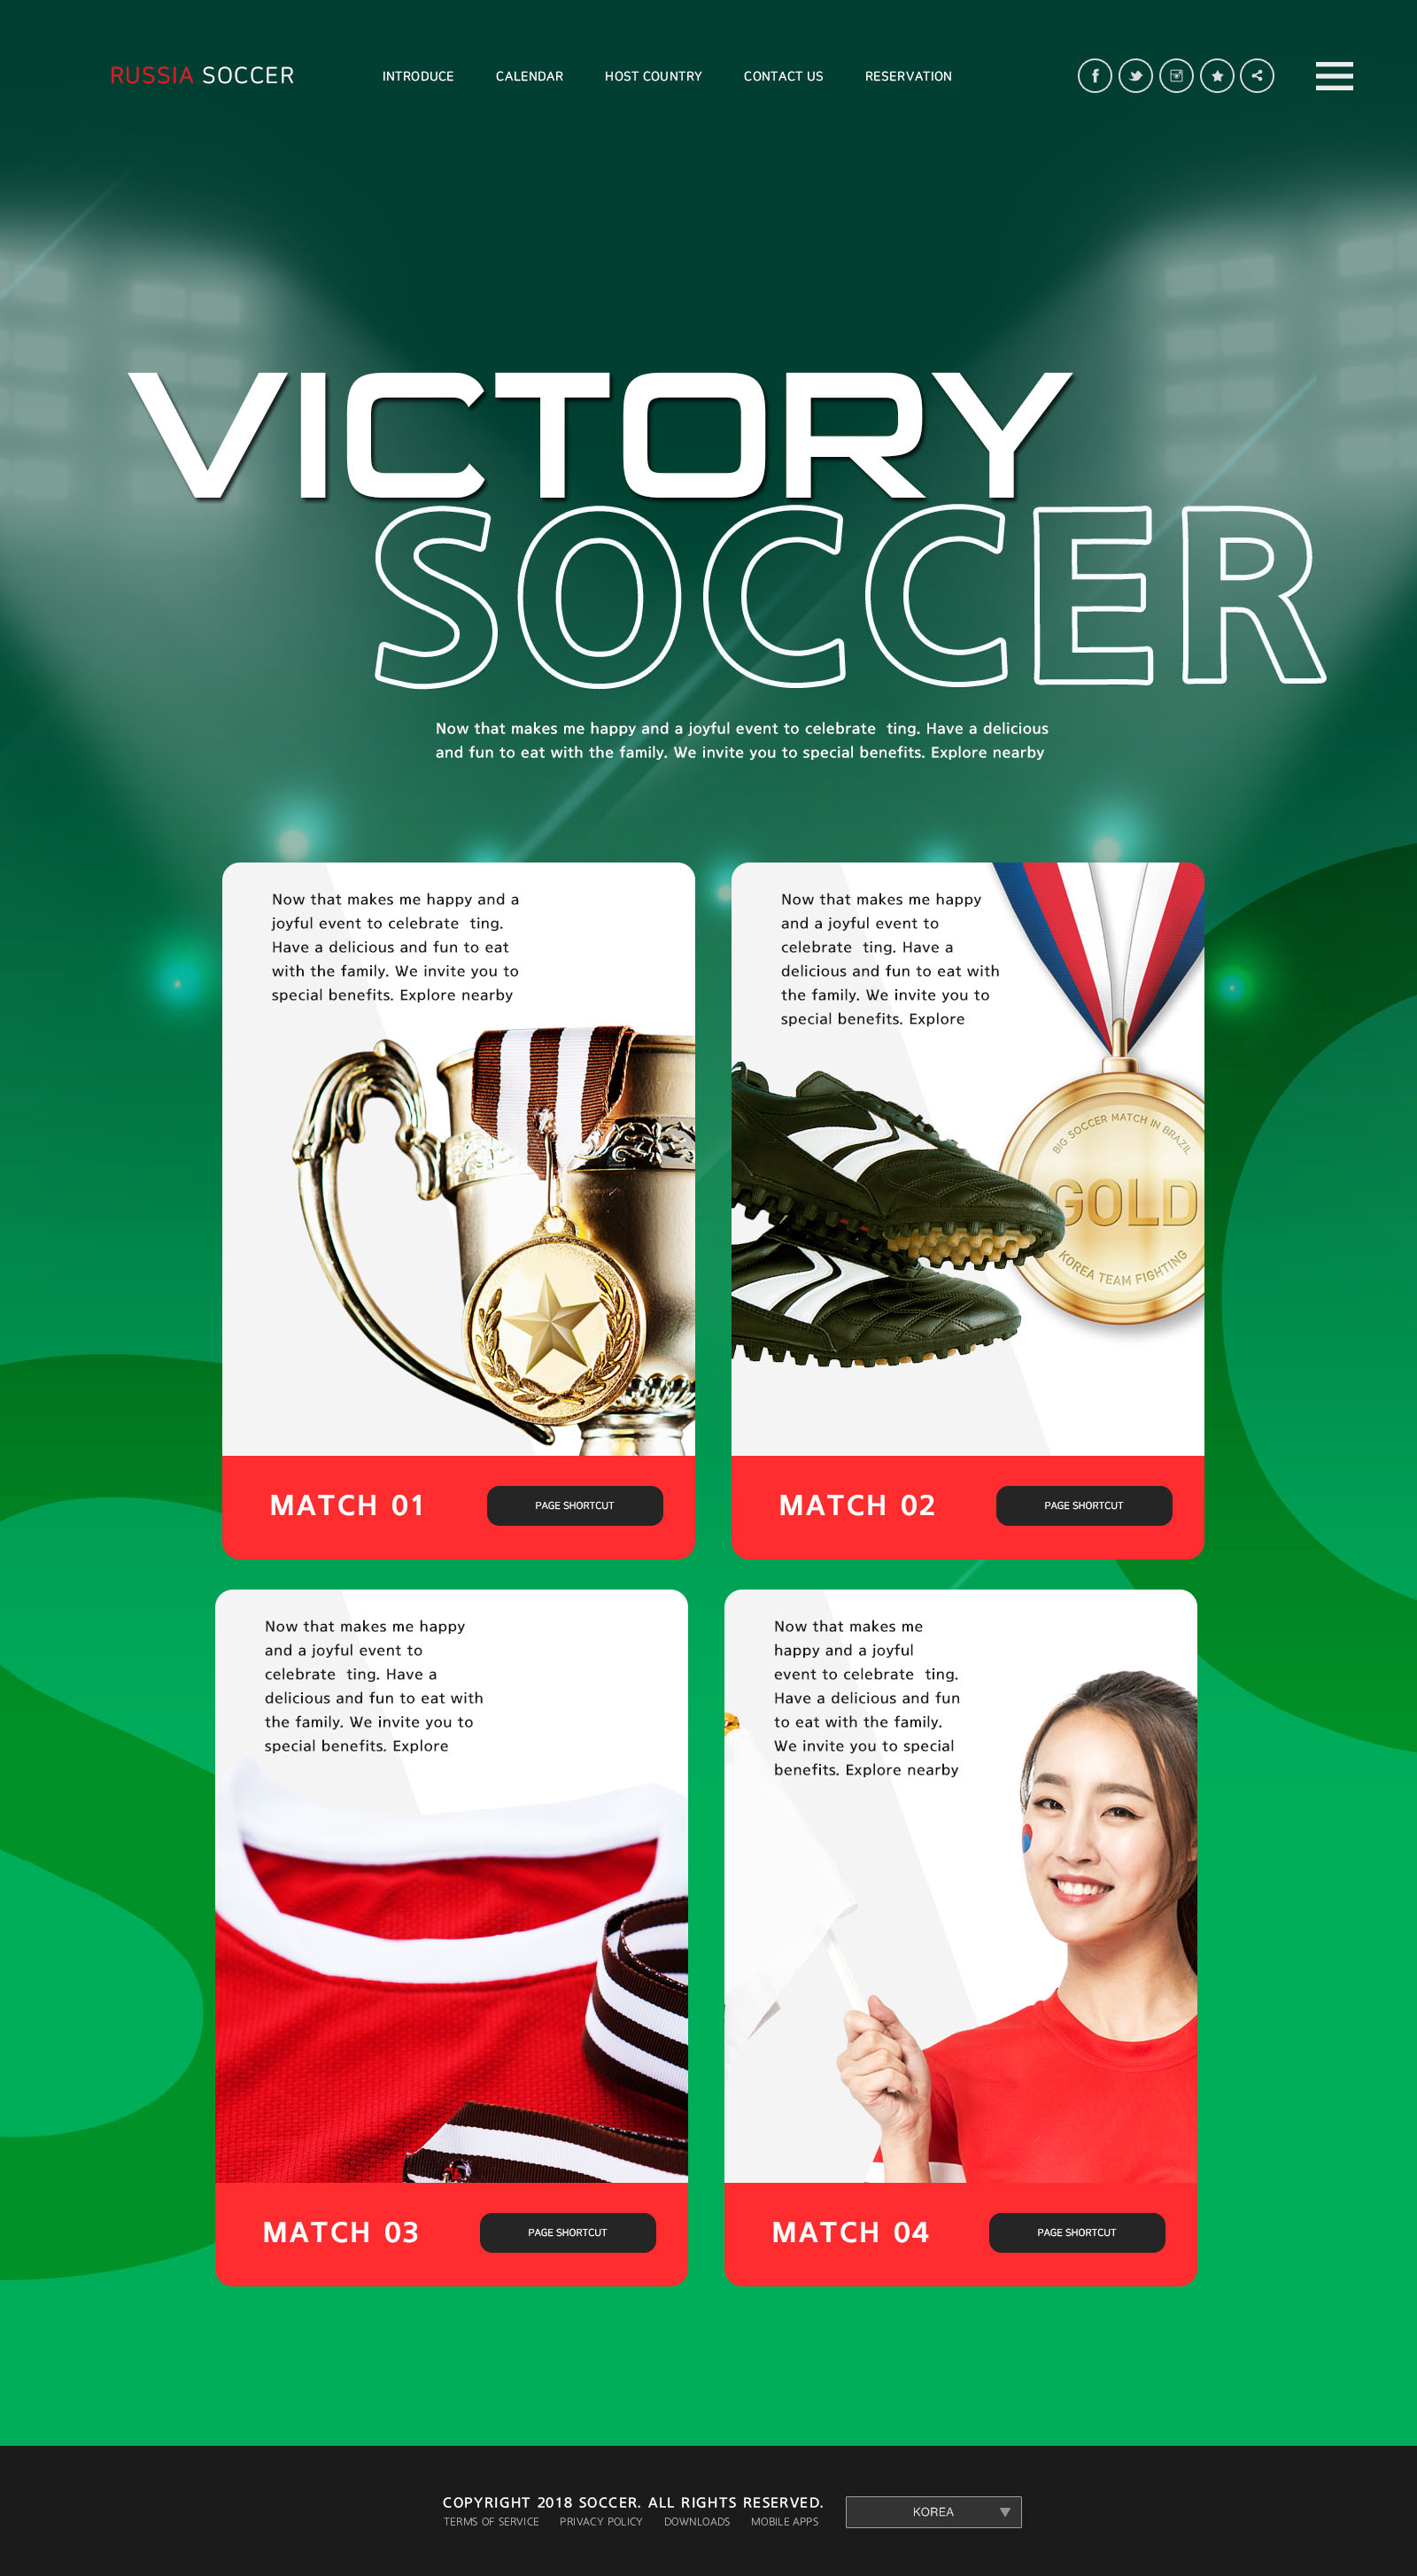 世界杯足球专题广告设计PSD模板第一素材精选(韩国风格)插图(5)